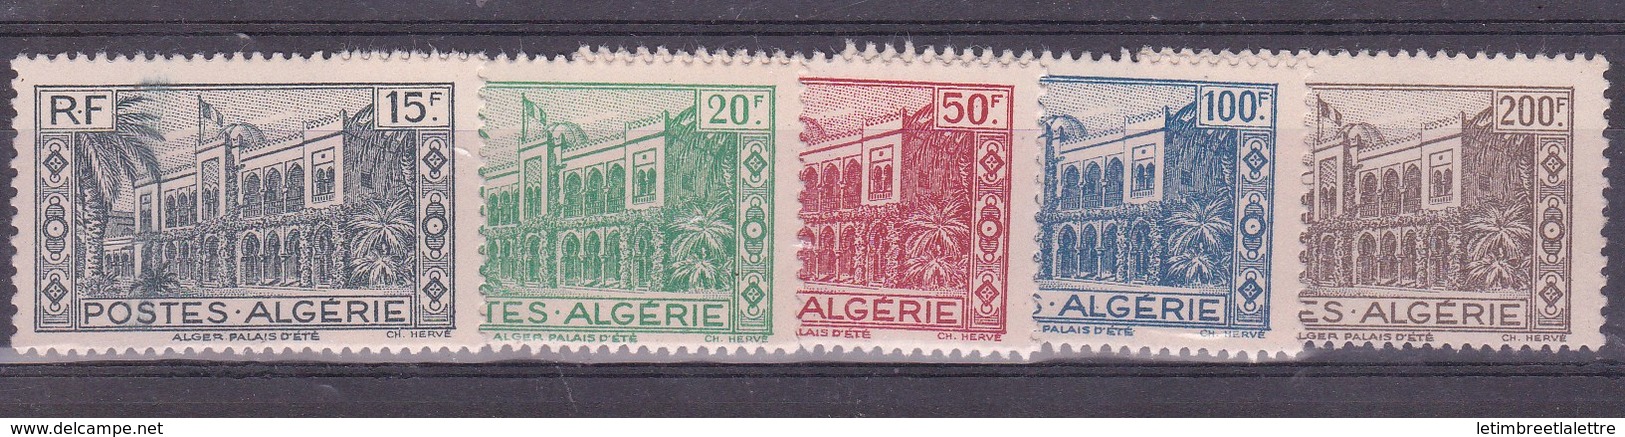 ⭐ Algérie - YT N° 200 à 204 ** - Neuf Sans Charnière - 1944 ⭐ - Nuovi